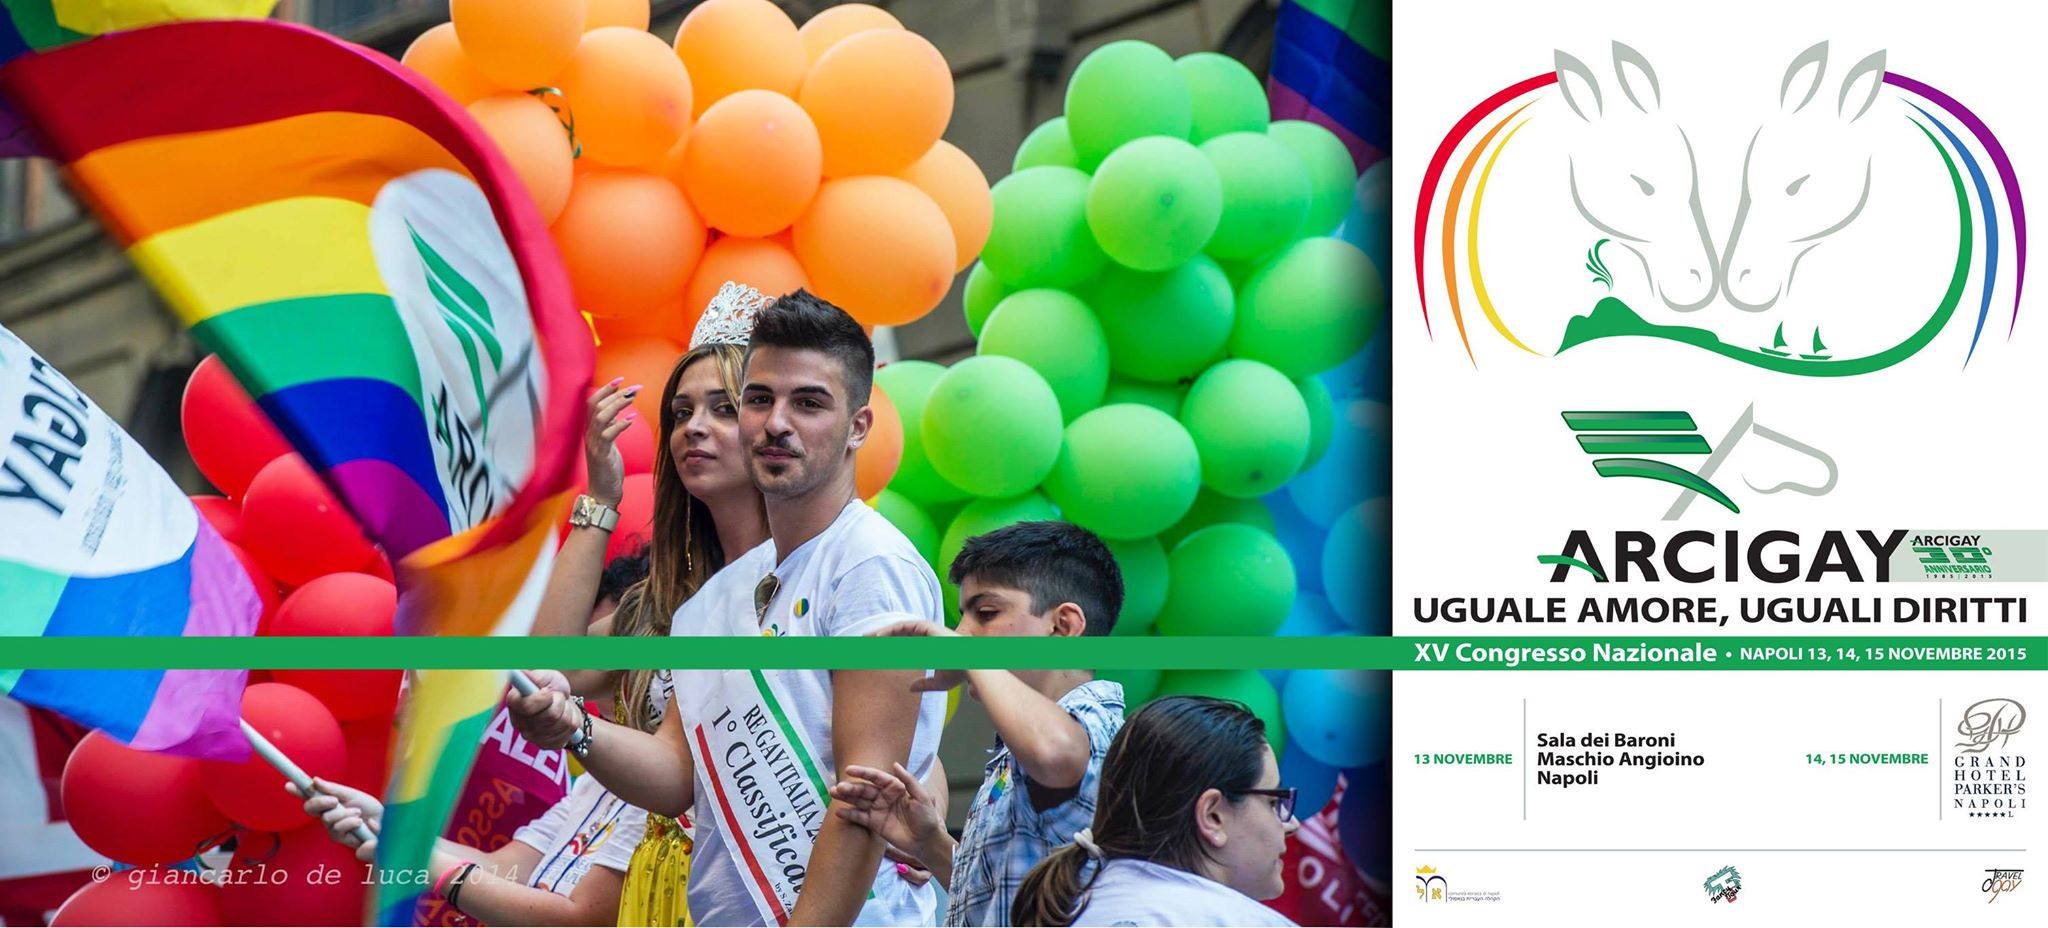 Arcigay Nazionale va a congresso: da domani a Napoli per i trent'anni - congresso arcigay 1 - Gay.it